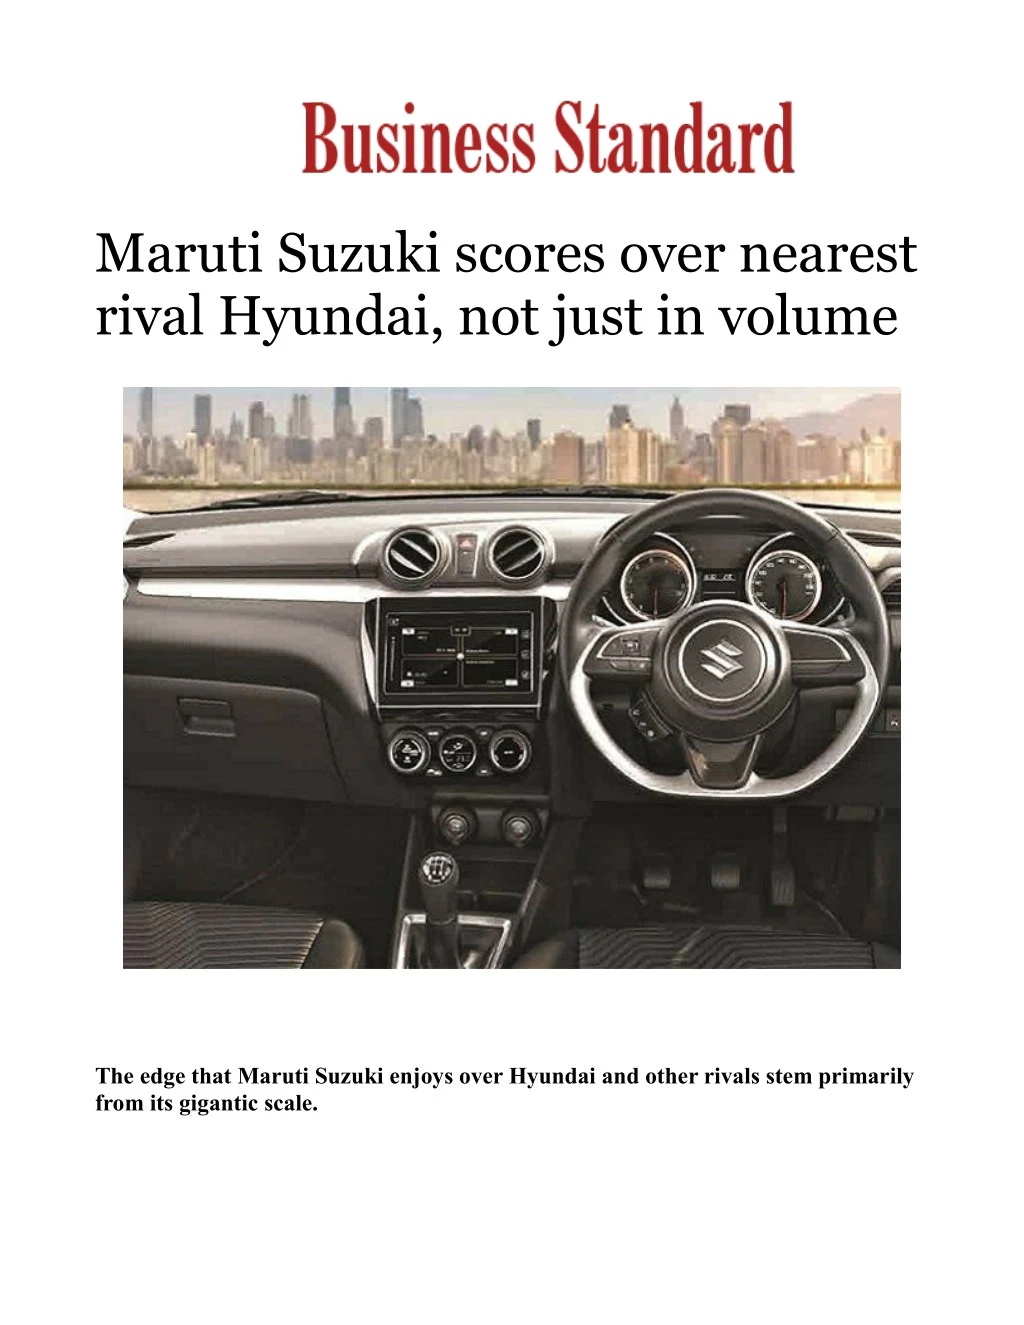 maruti suzuki scores over nearest rival hyundai